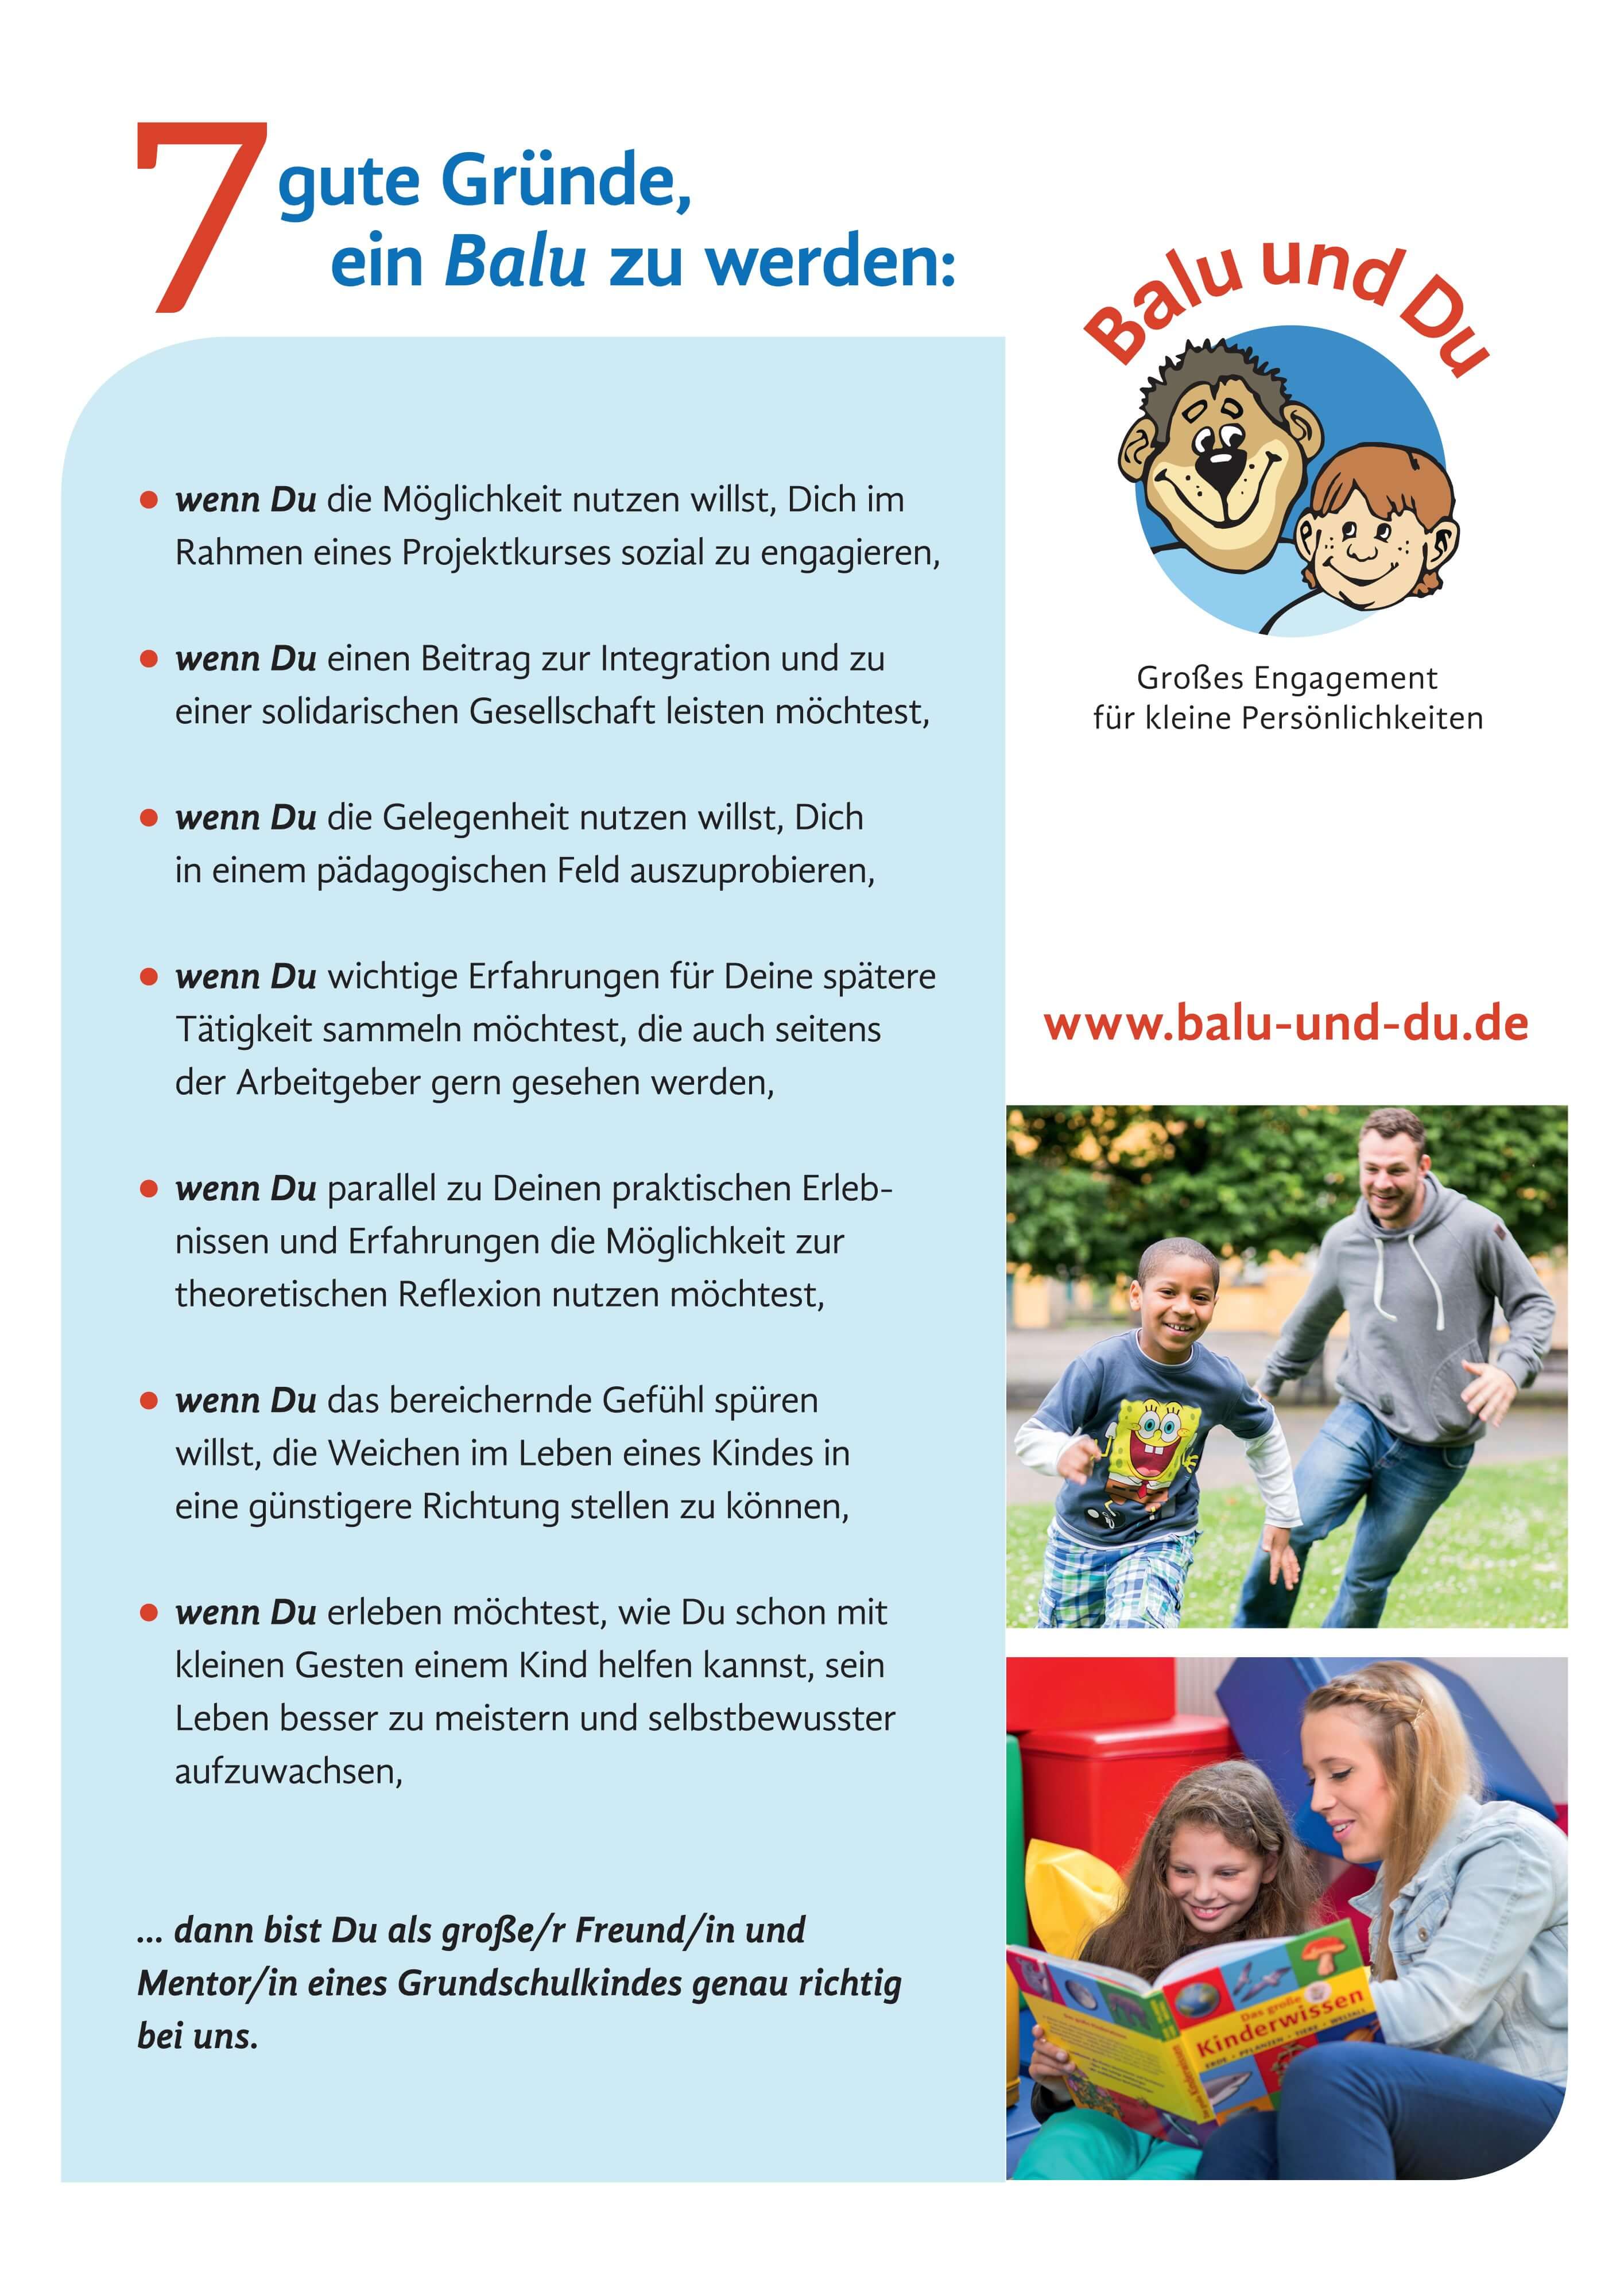 Balu und Du - 7 gute Gründe, ein Balu zu werden - Trude-Herr-Gesamtschule Köln-Mülheim - THG